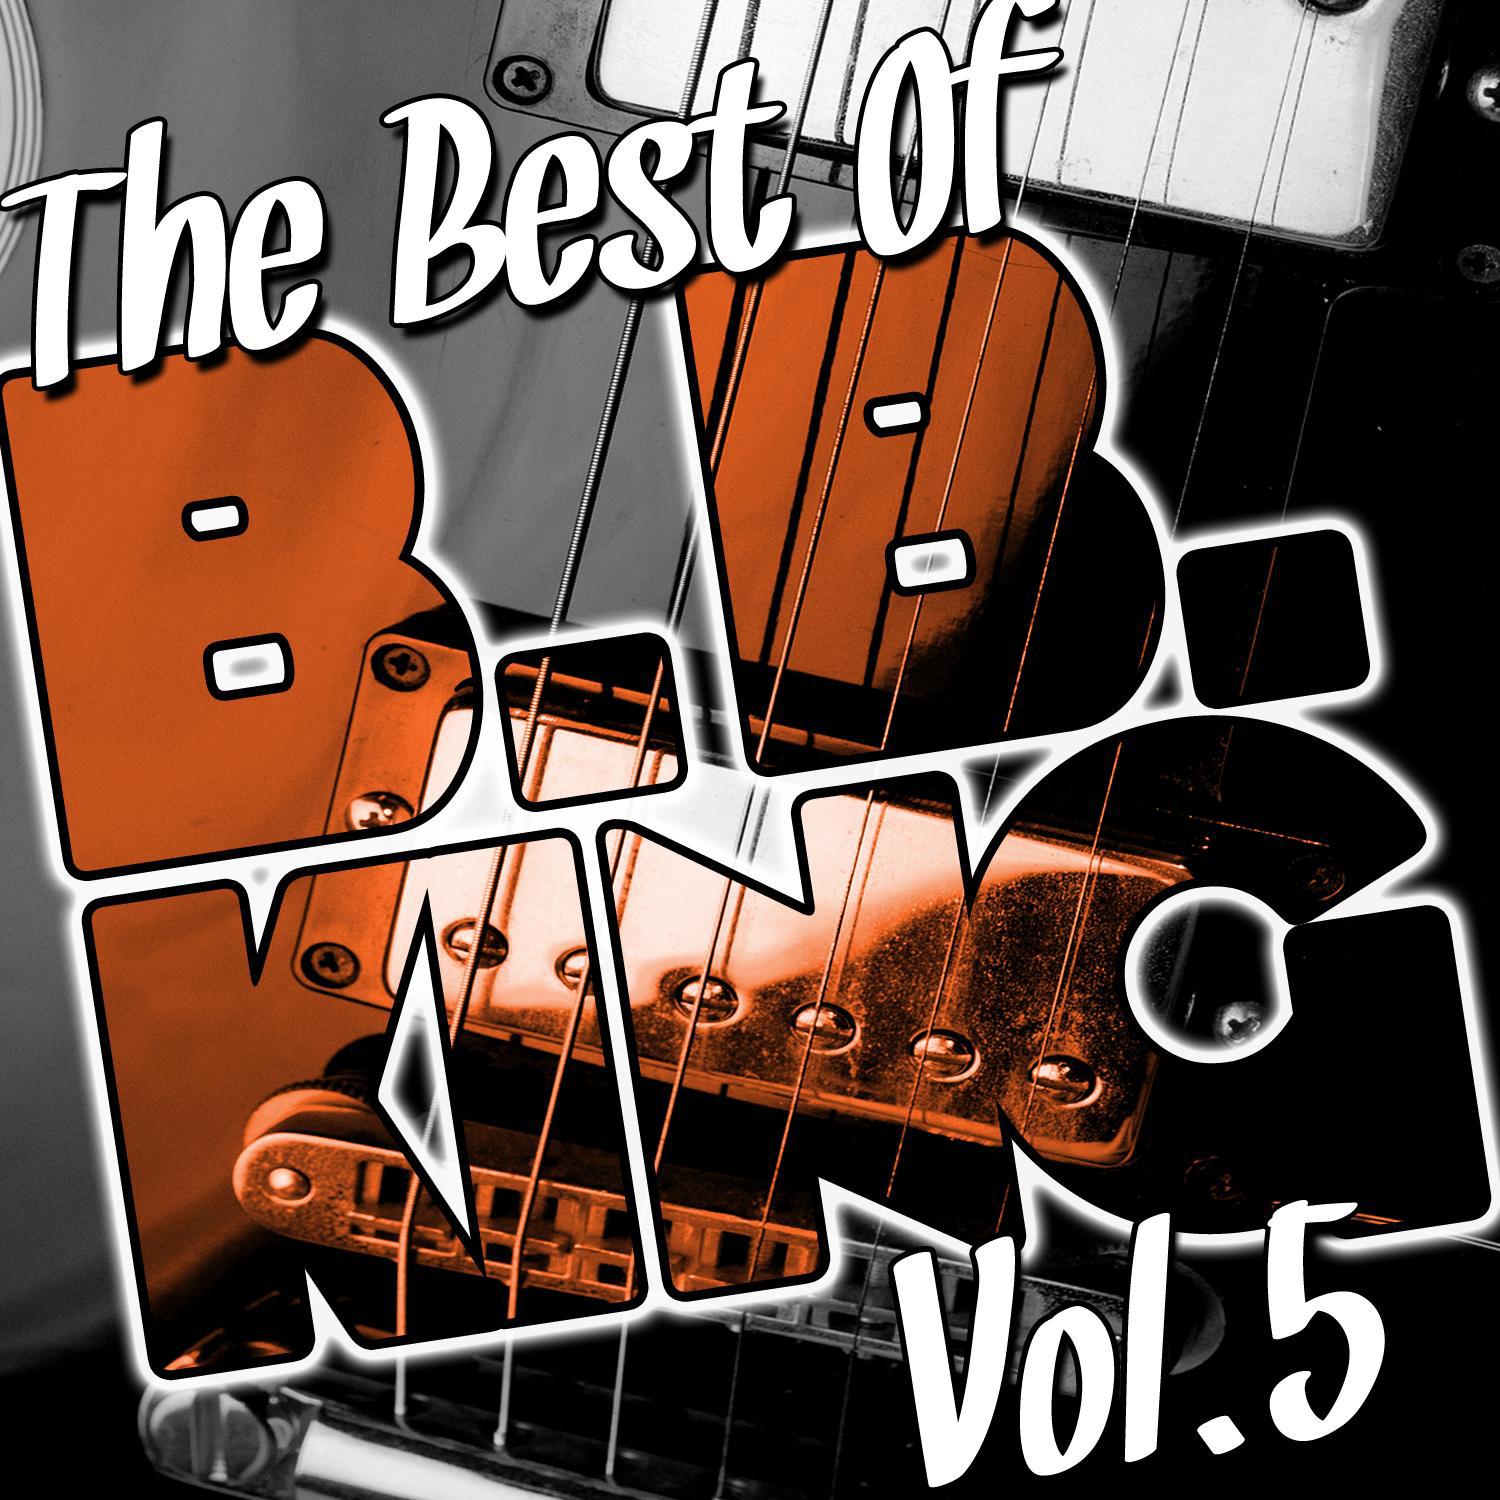 The Best of B.B. King Vol. 5